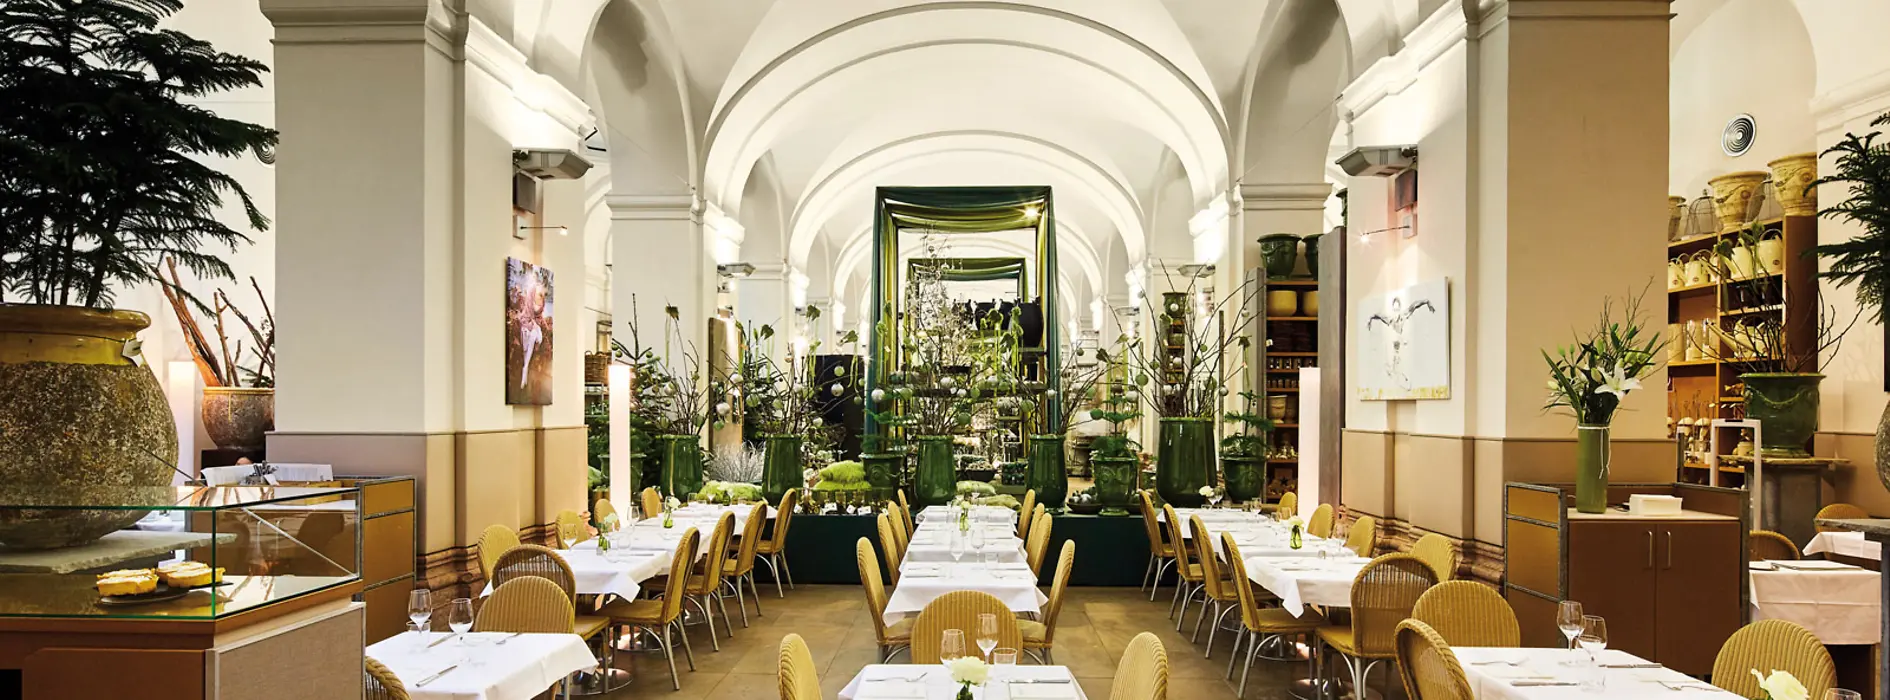 Restaurace Hansen v budově vídeňského Starého burzovního paláce, pohled do interiéru